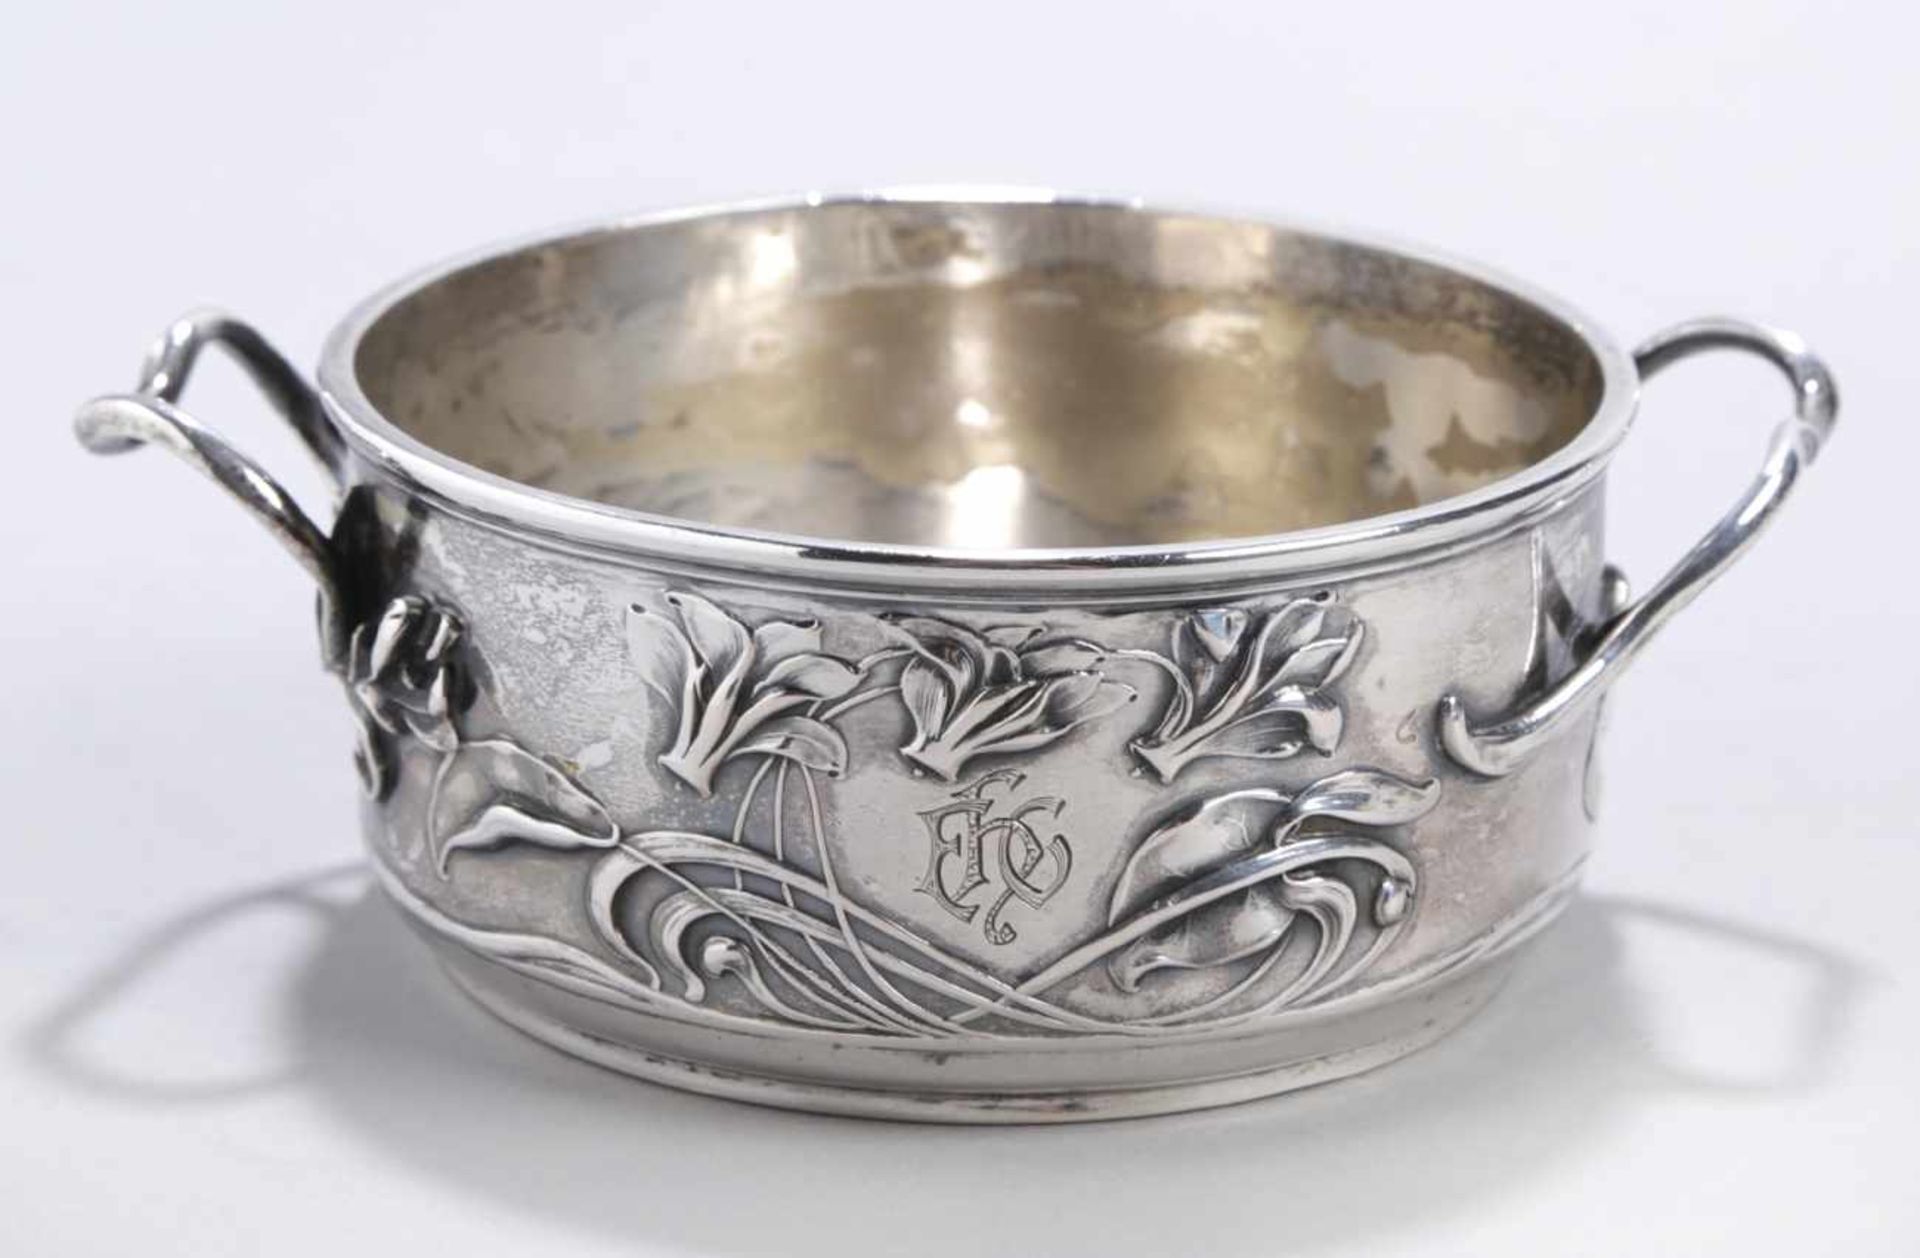 Anbieteschale, dt., um 1900-10, Silber 800, runde Form, seitlich 2 Tragegriffe, Schauseite